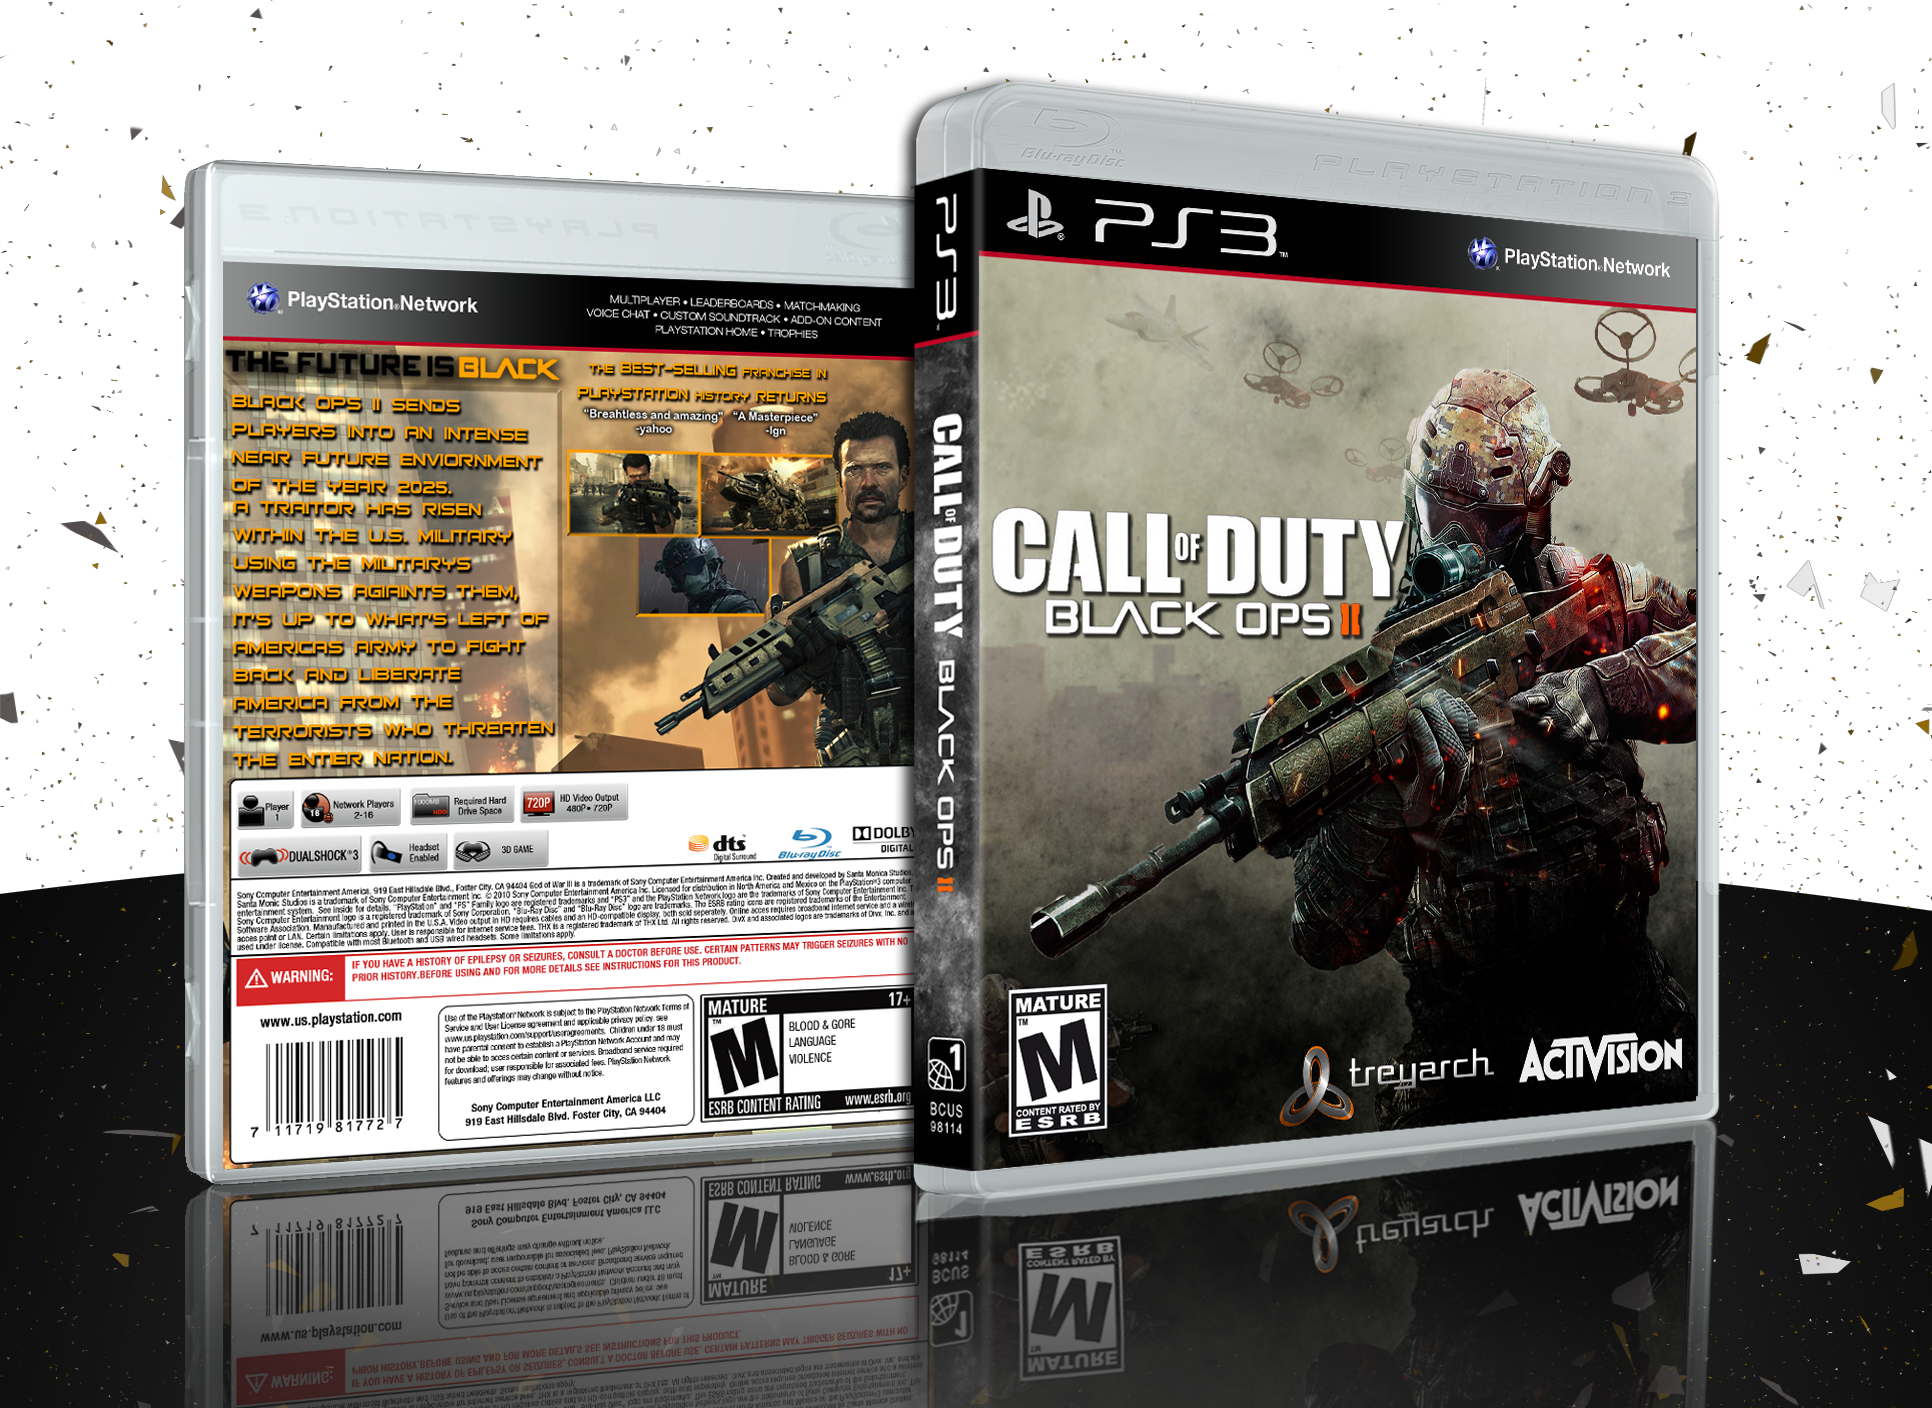 Call of Duty: Black Ops II box cover